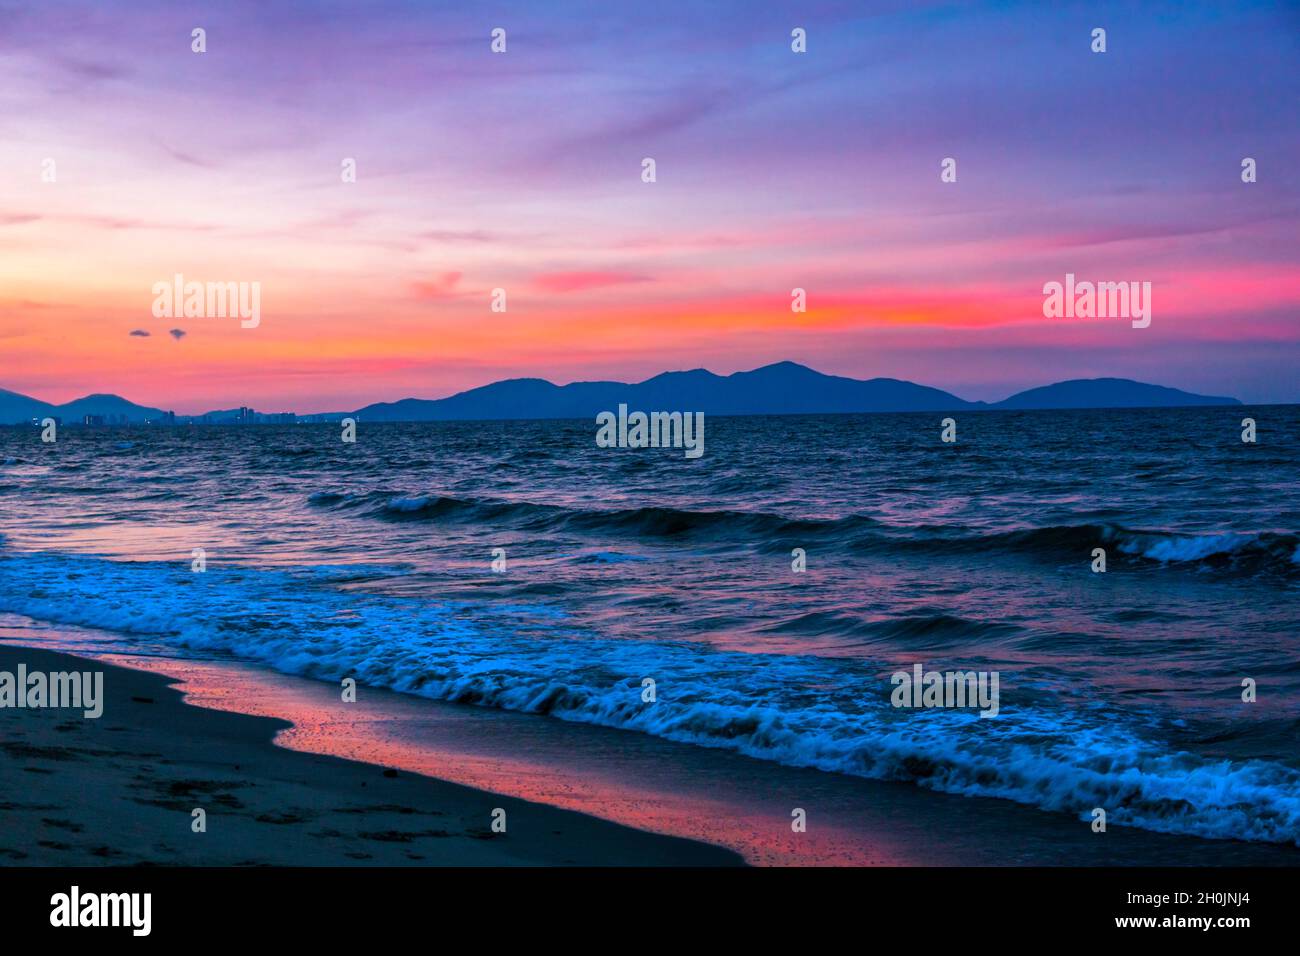 Wunderschöner Sonnenuntergang am Strand mit Rot-, Blau- und Magentaroten, mit dem Ozean und den Bergen in der Szene. Stockfoto